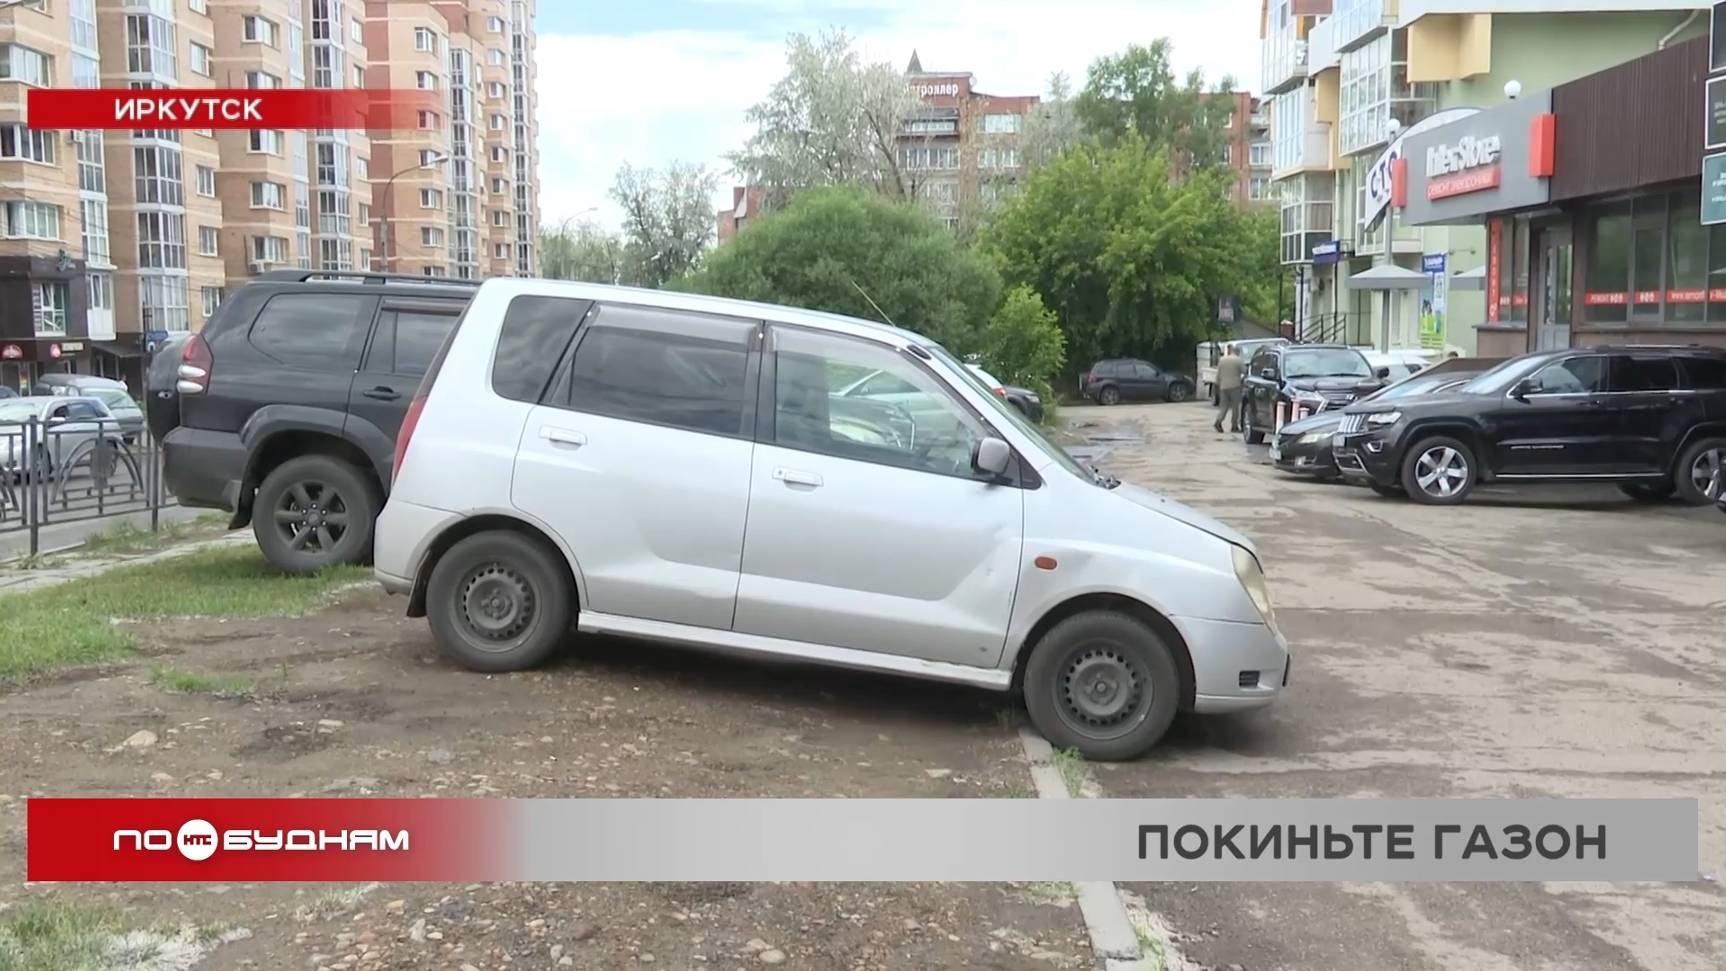 "Автохам": выпуск 395. Штраф за парковку на газоне хотят ввести в Иркутской области